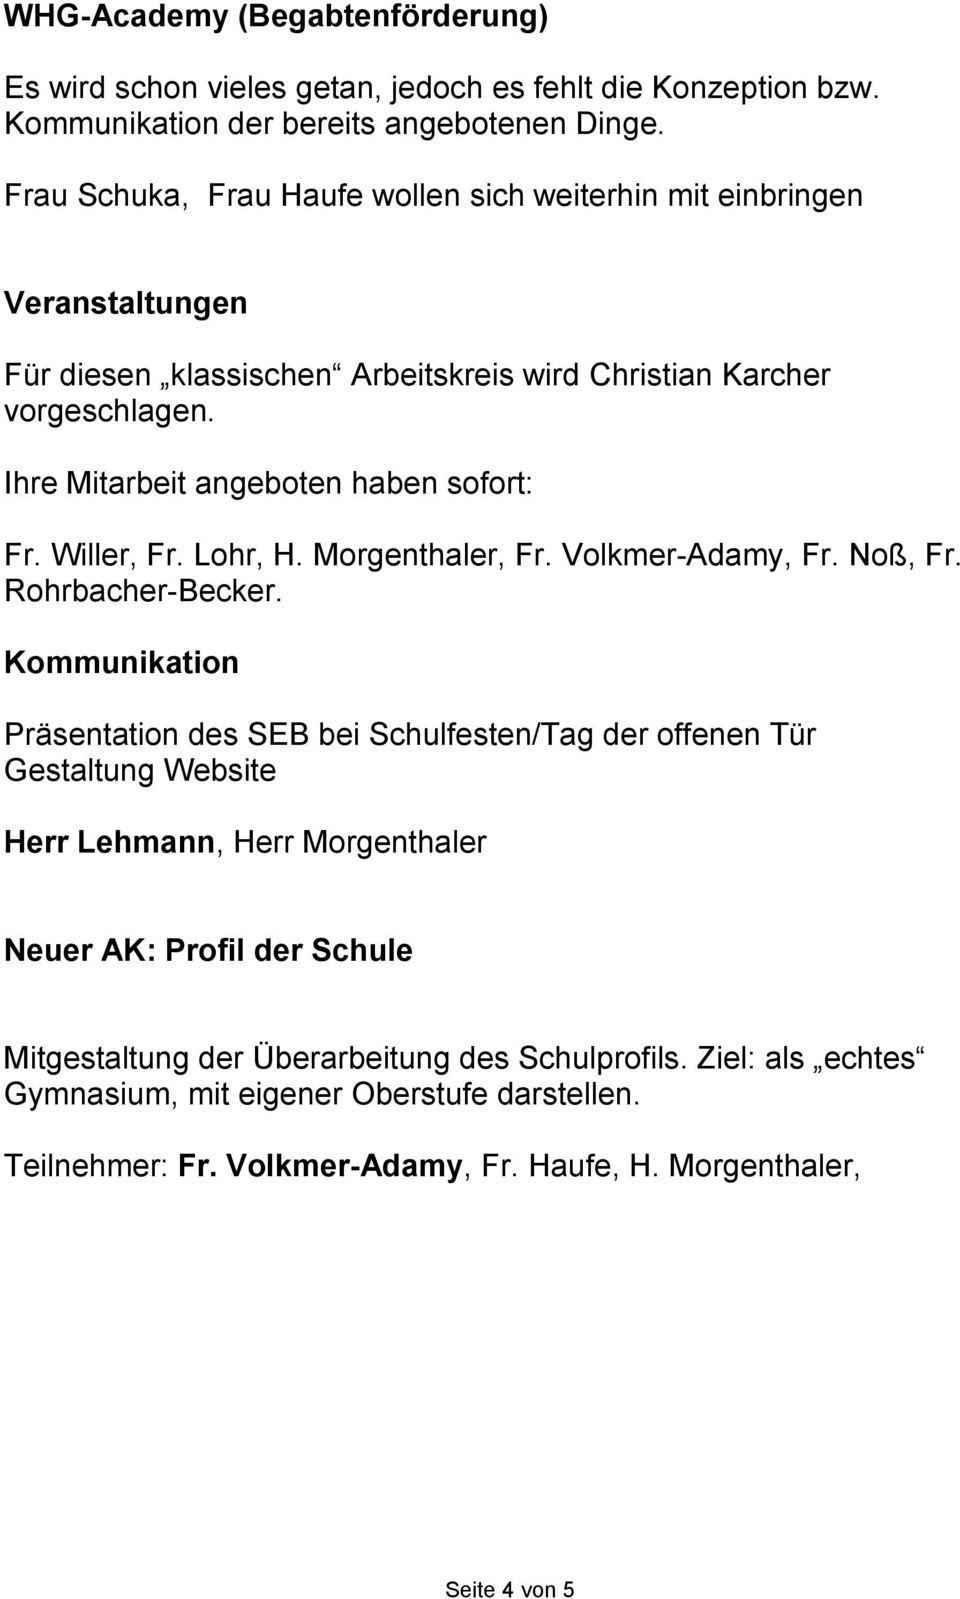 Ihre Mitarbeit angeboten haben sofort: Fr. Willer, Fr. Lohr, H. Morgenthaler, Fr. Volkmer-Adamy, Fr. Noß, Fr. Rohrbacher-Becker.